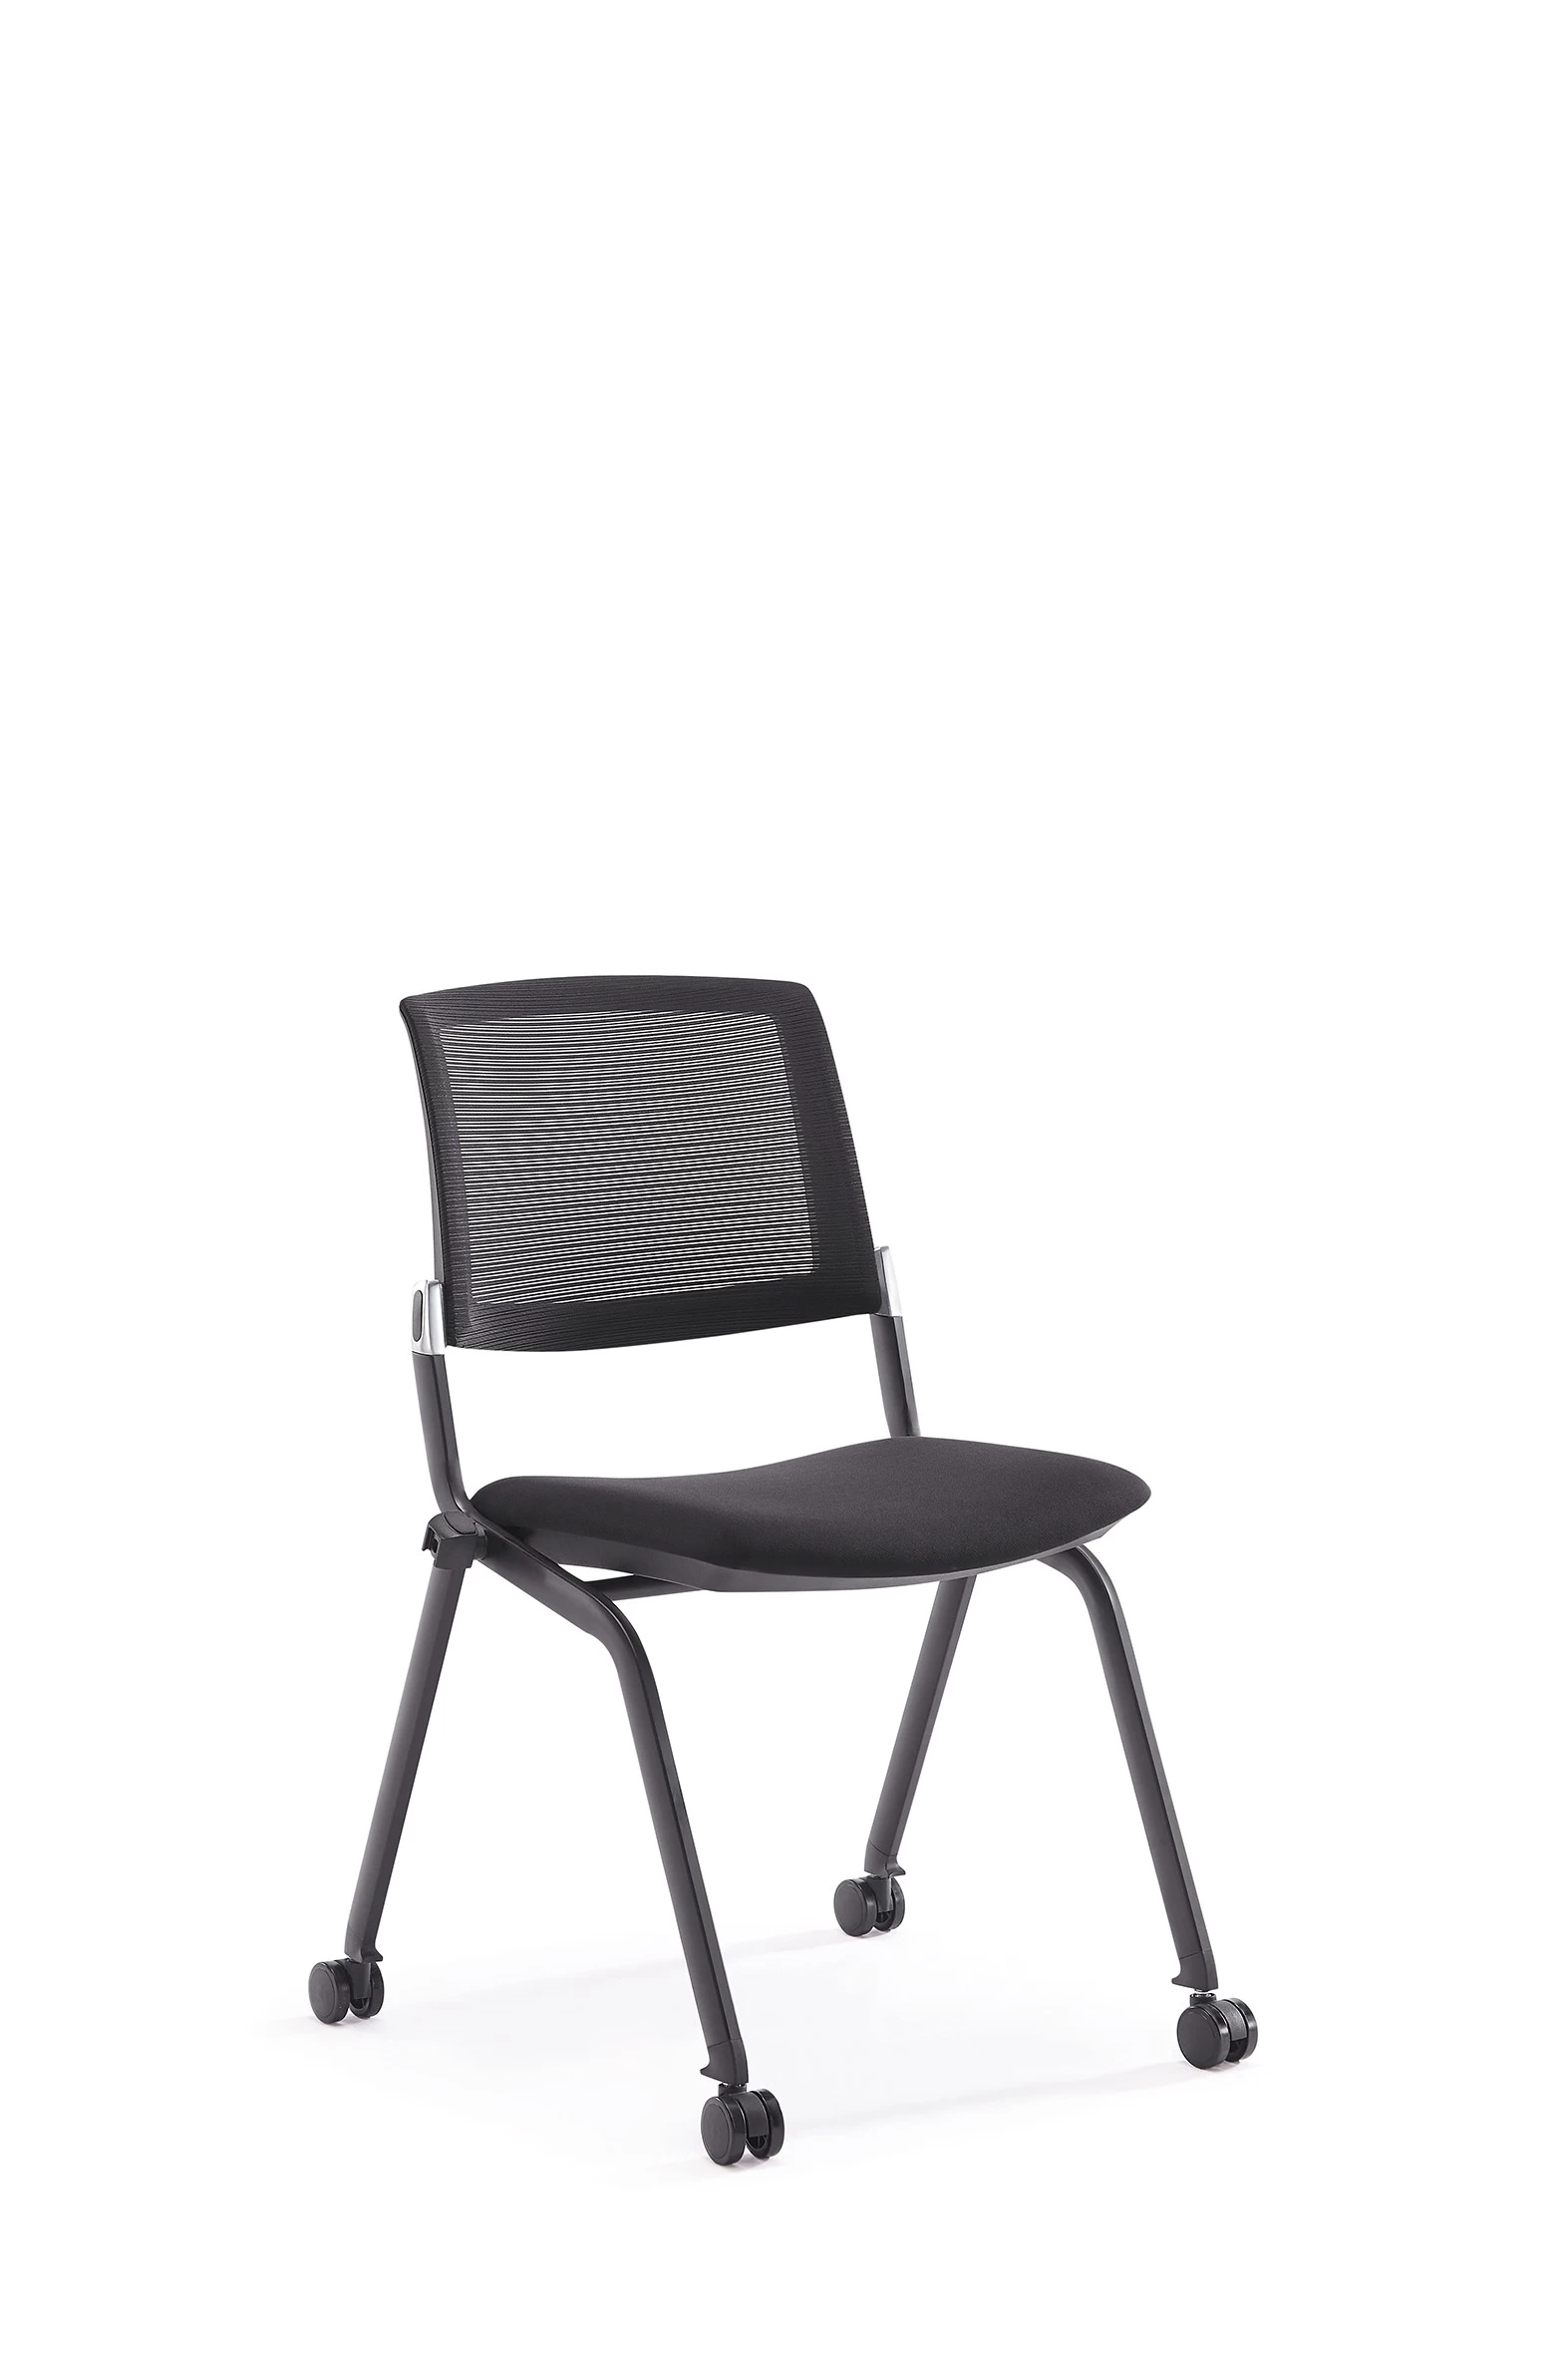 Newcity 1532经济培训椅可折叠机制培训椅纯棉尼龙脚轮PP扶手供应商中国佛山质保5年